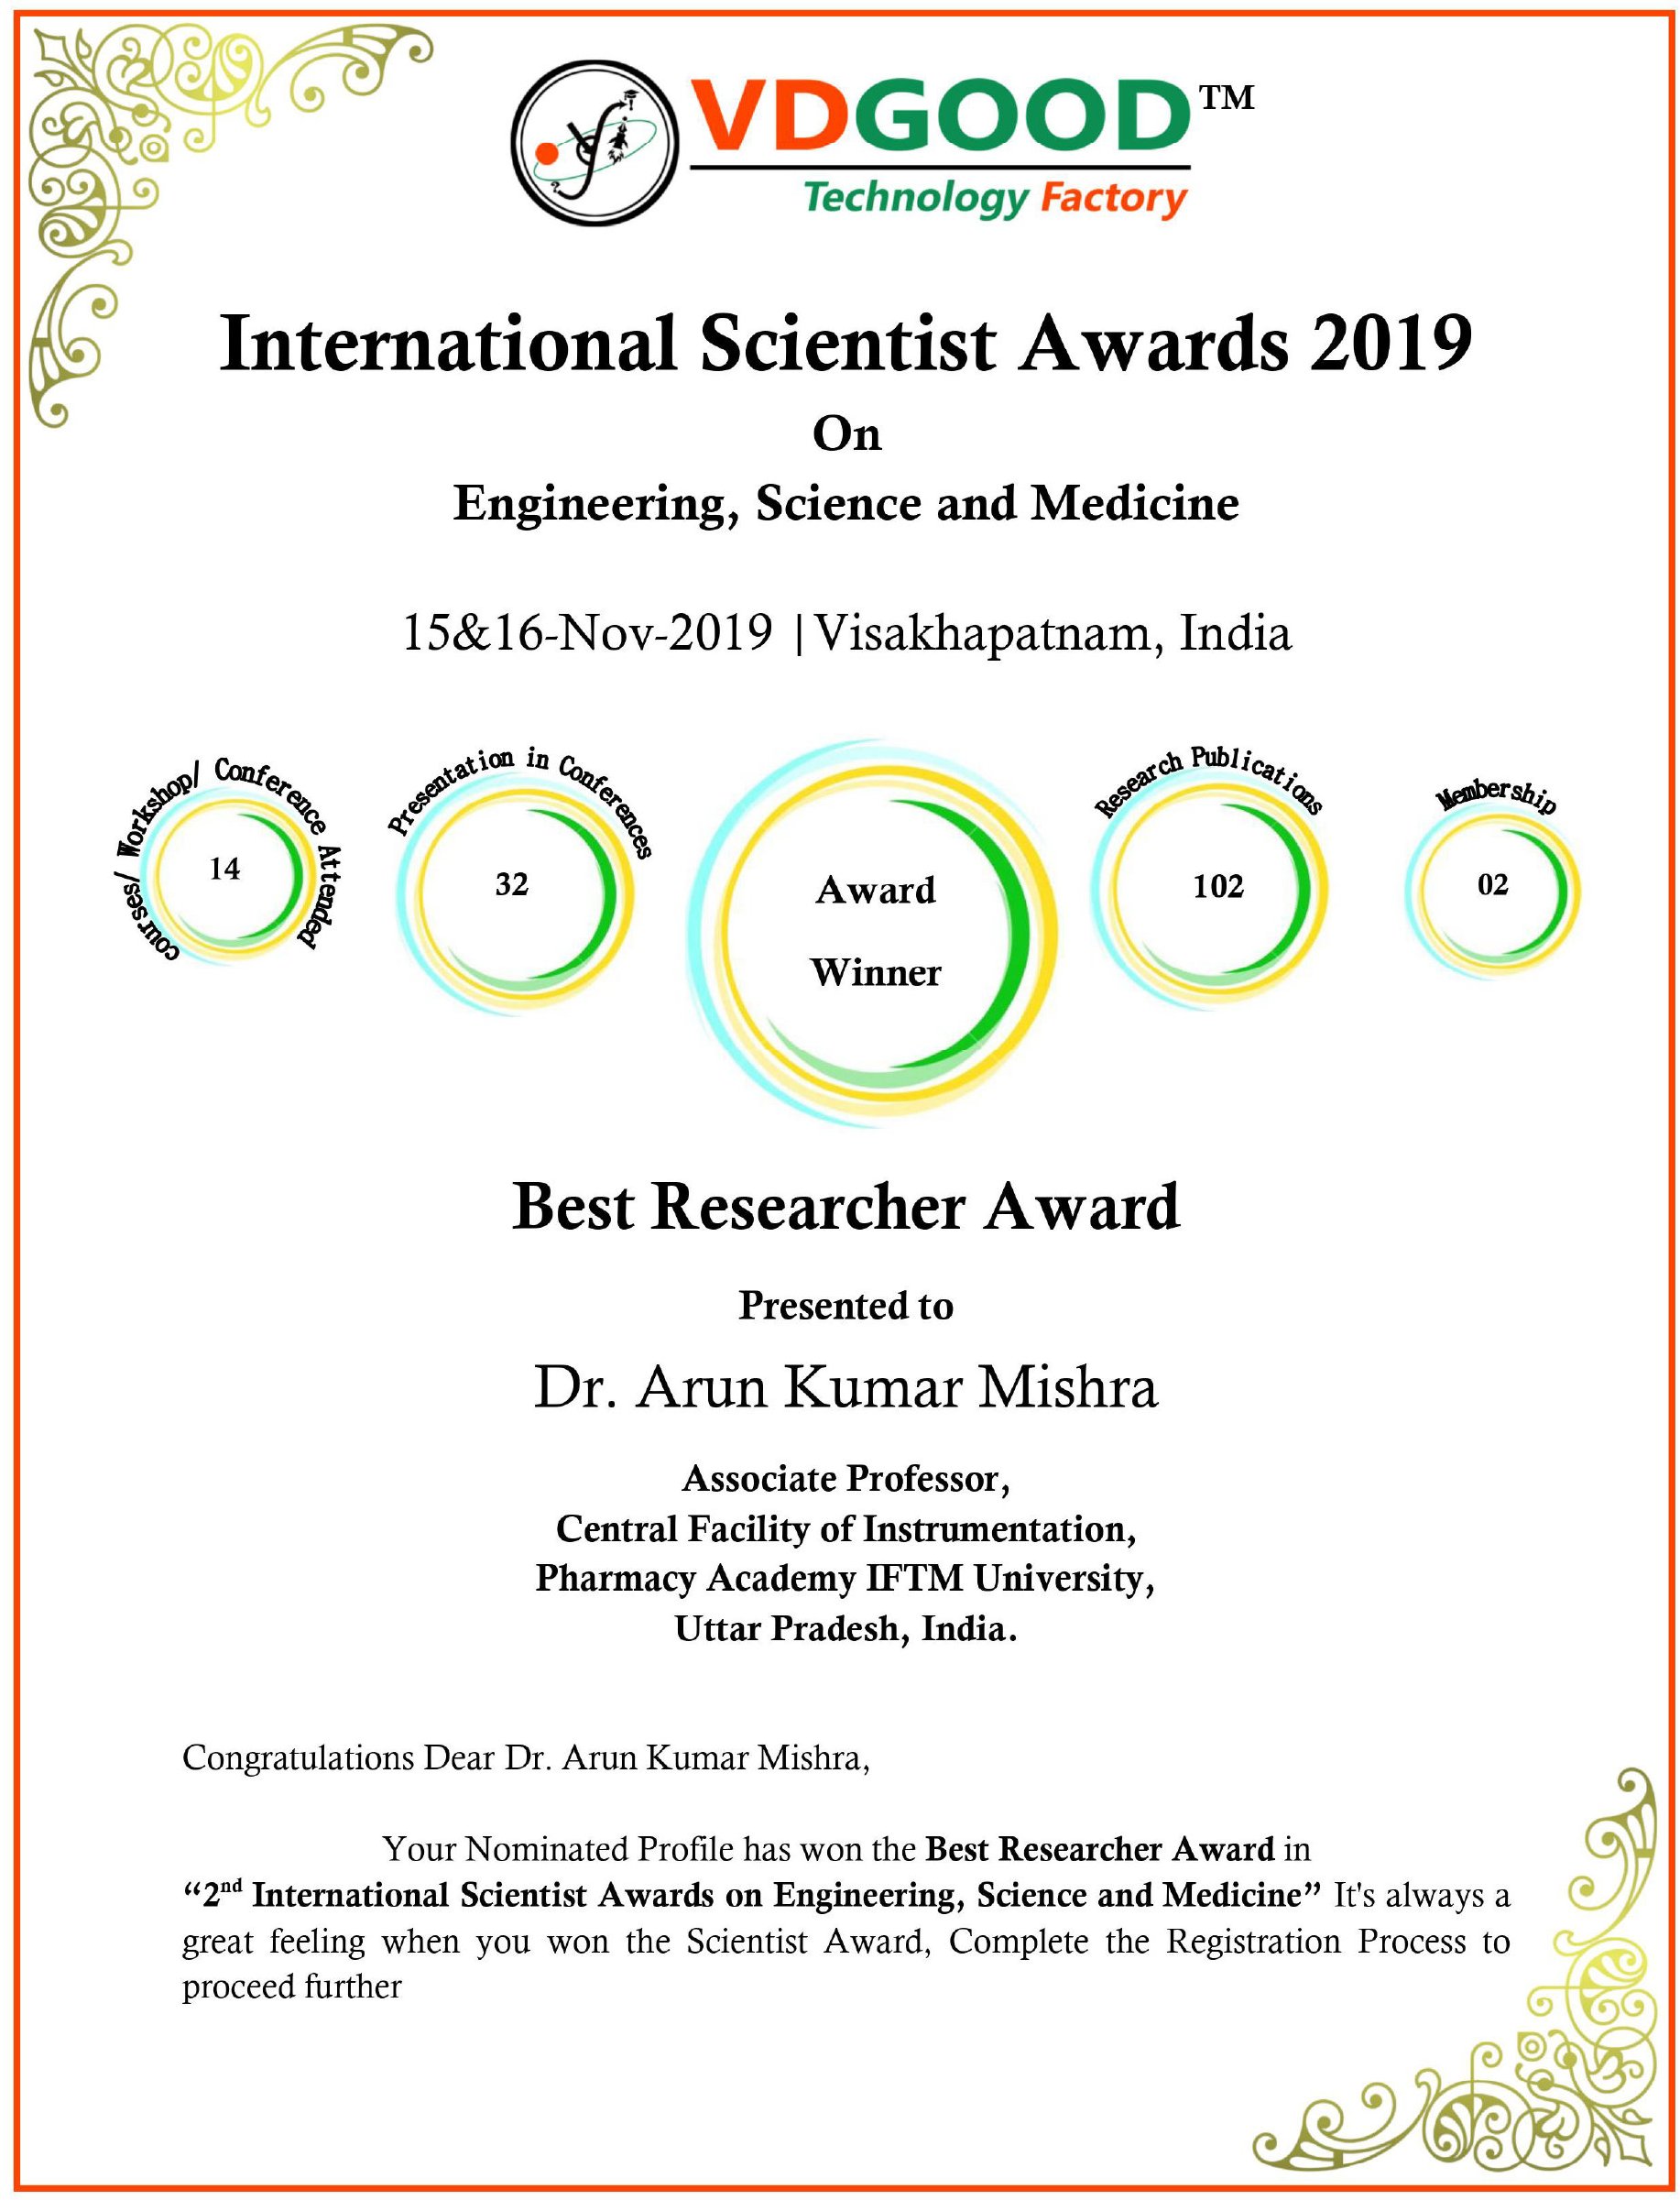 Best Researcher Award